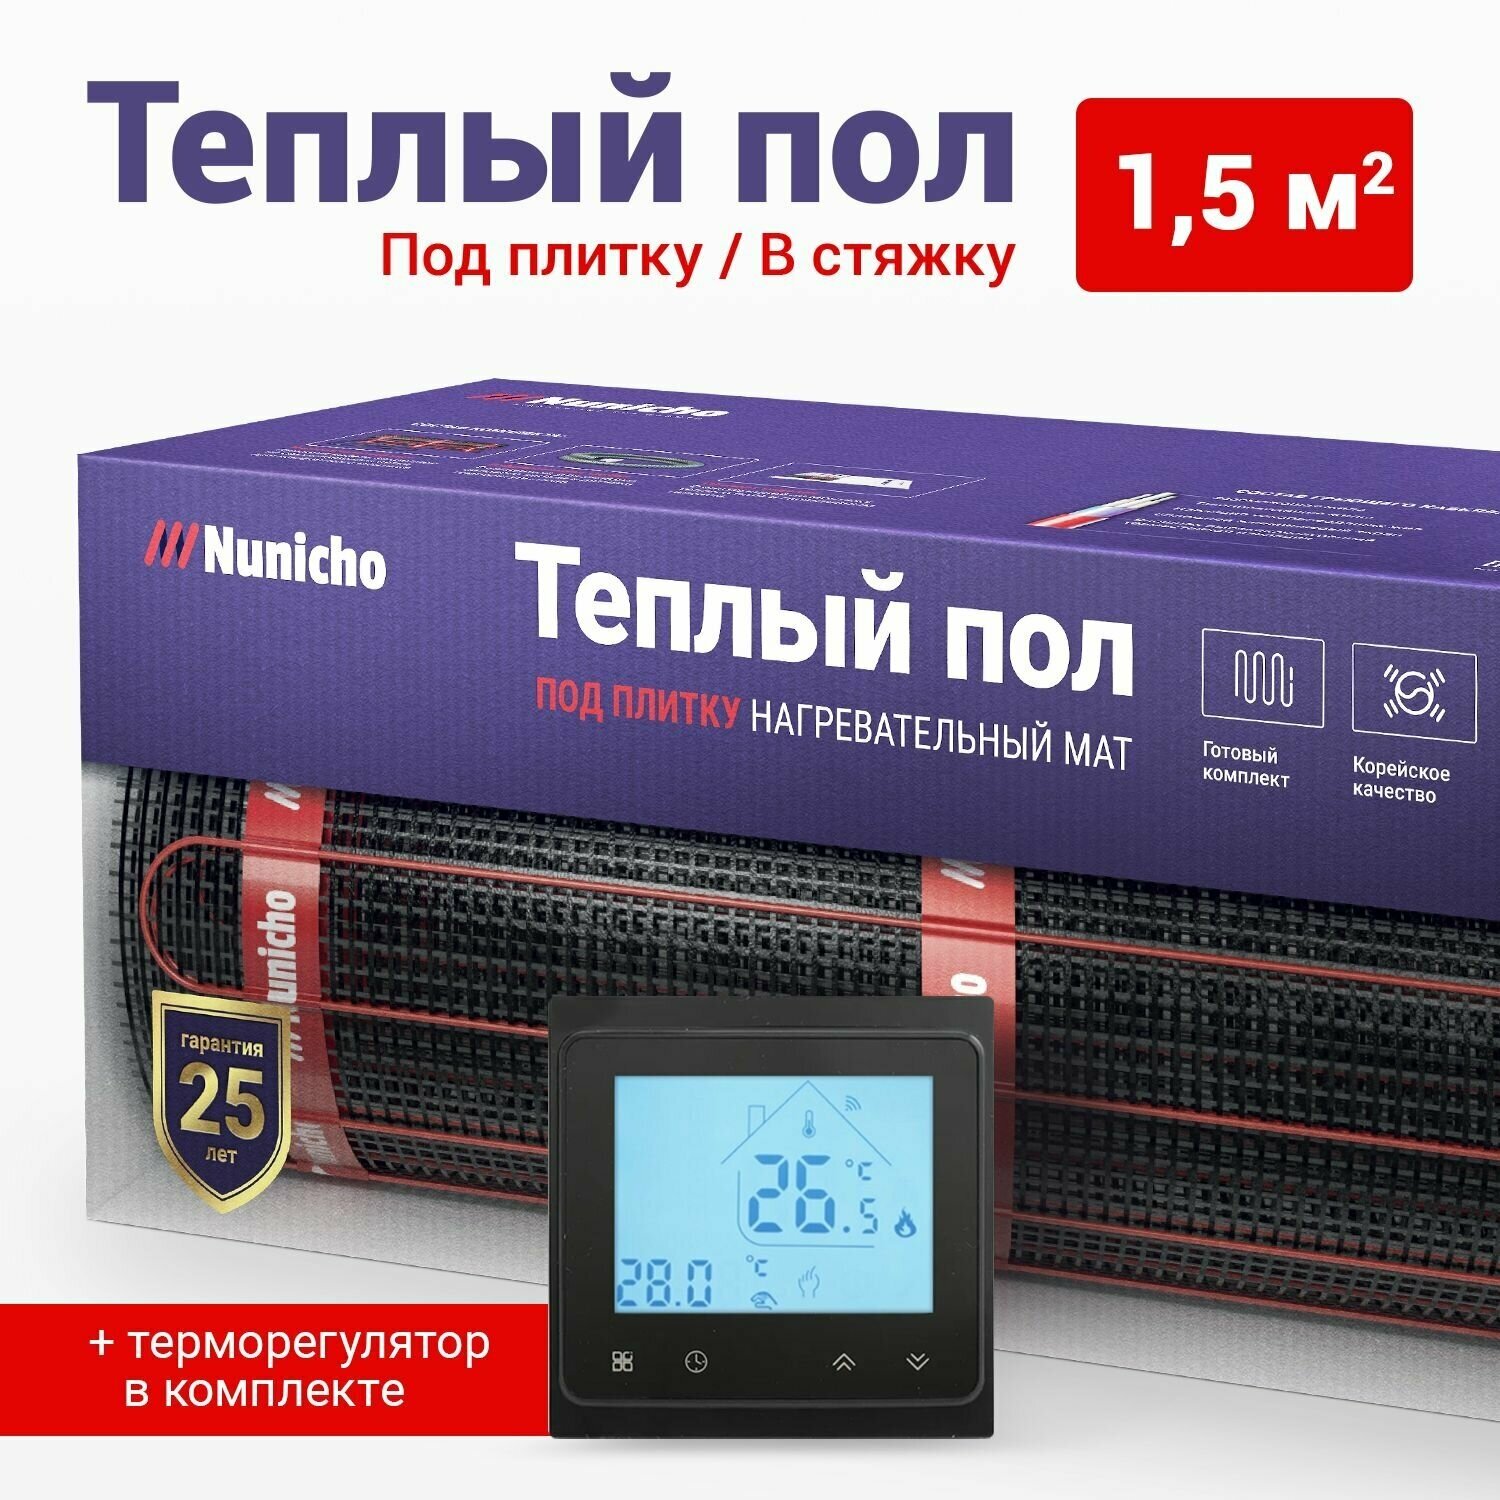 Теплый пол электрический под плитку 1,5 м2 Nunicho 150 Вт/м2 с Wifi терморегулятором черным, нагревательный мат